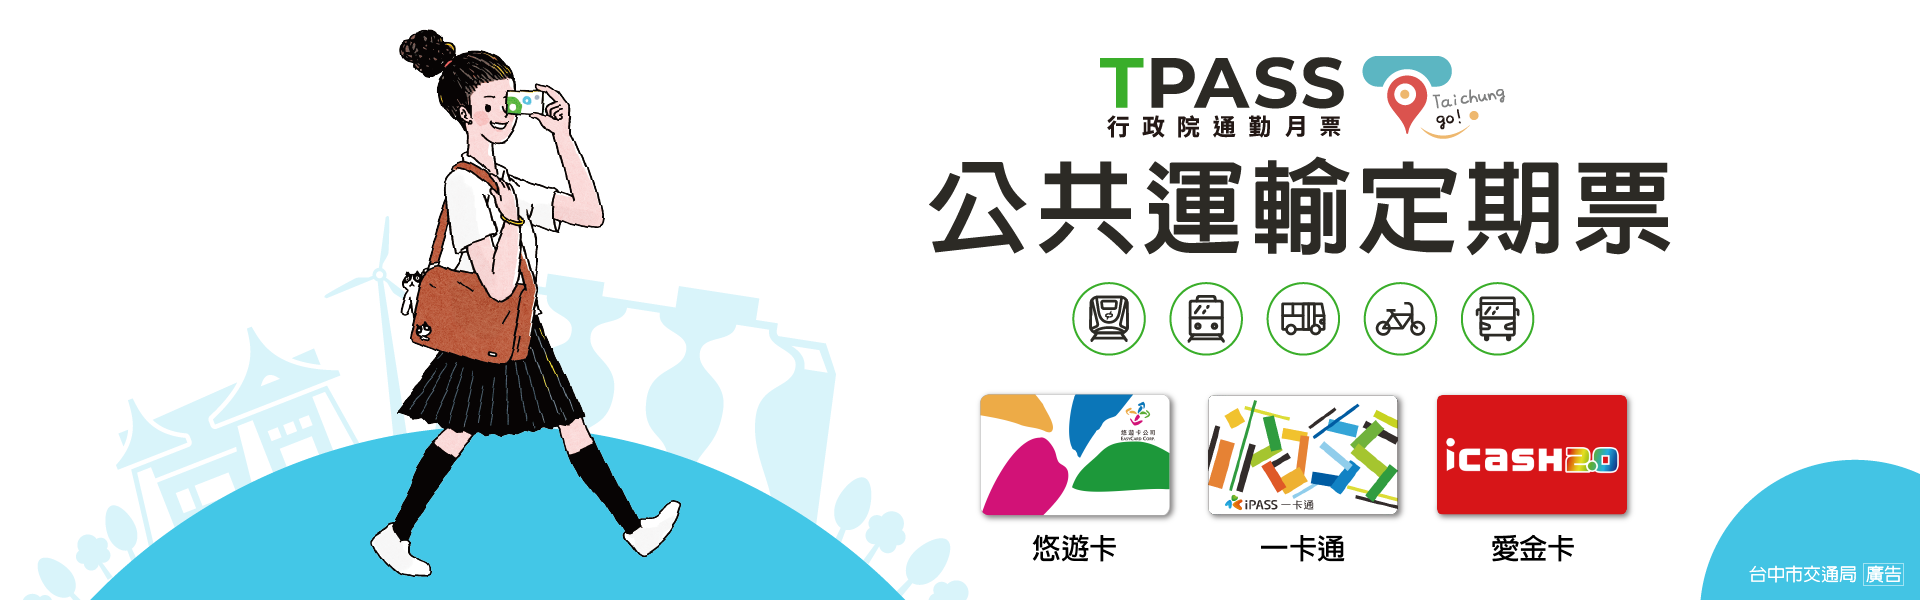 中彰投苗公共運輸定期票taichung go網站